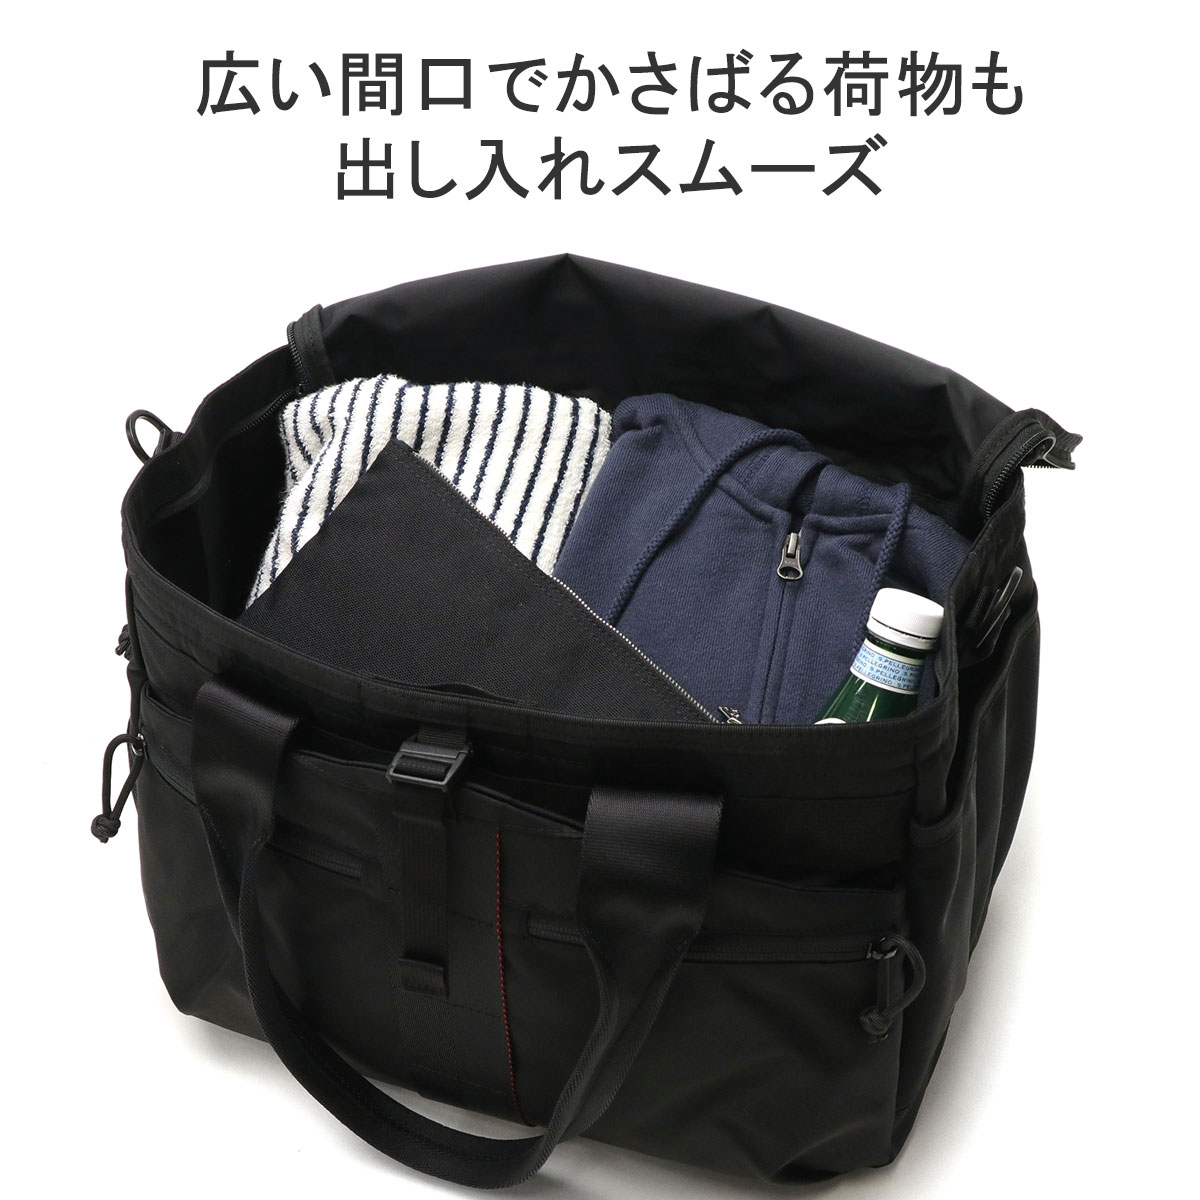 最大36%☆5/3限定 日本正規品 ブリーフィング トートバッグ メンズ 